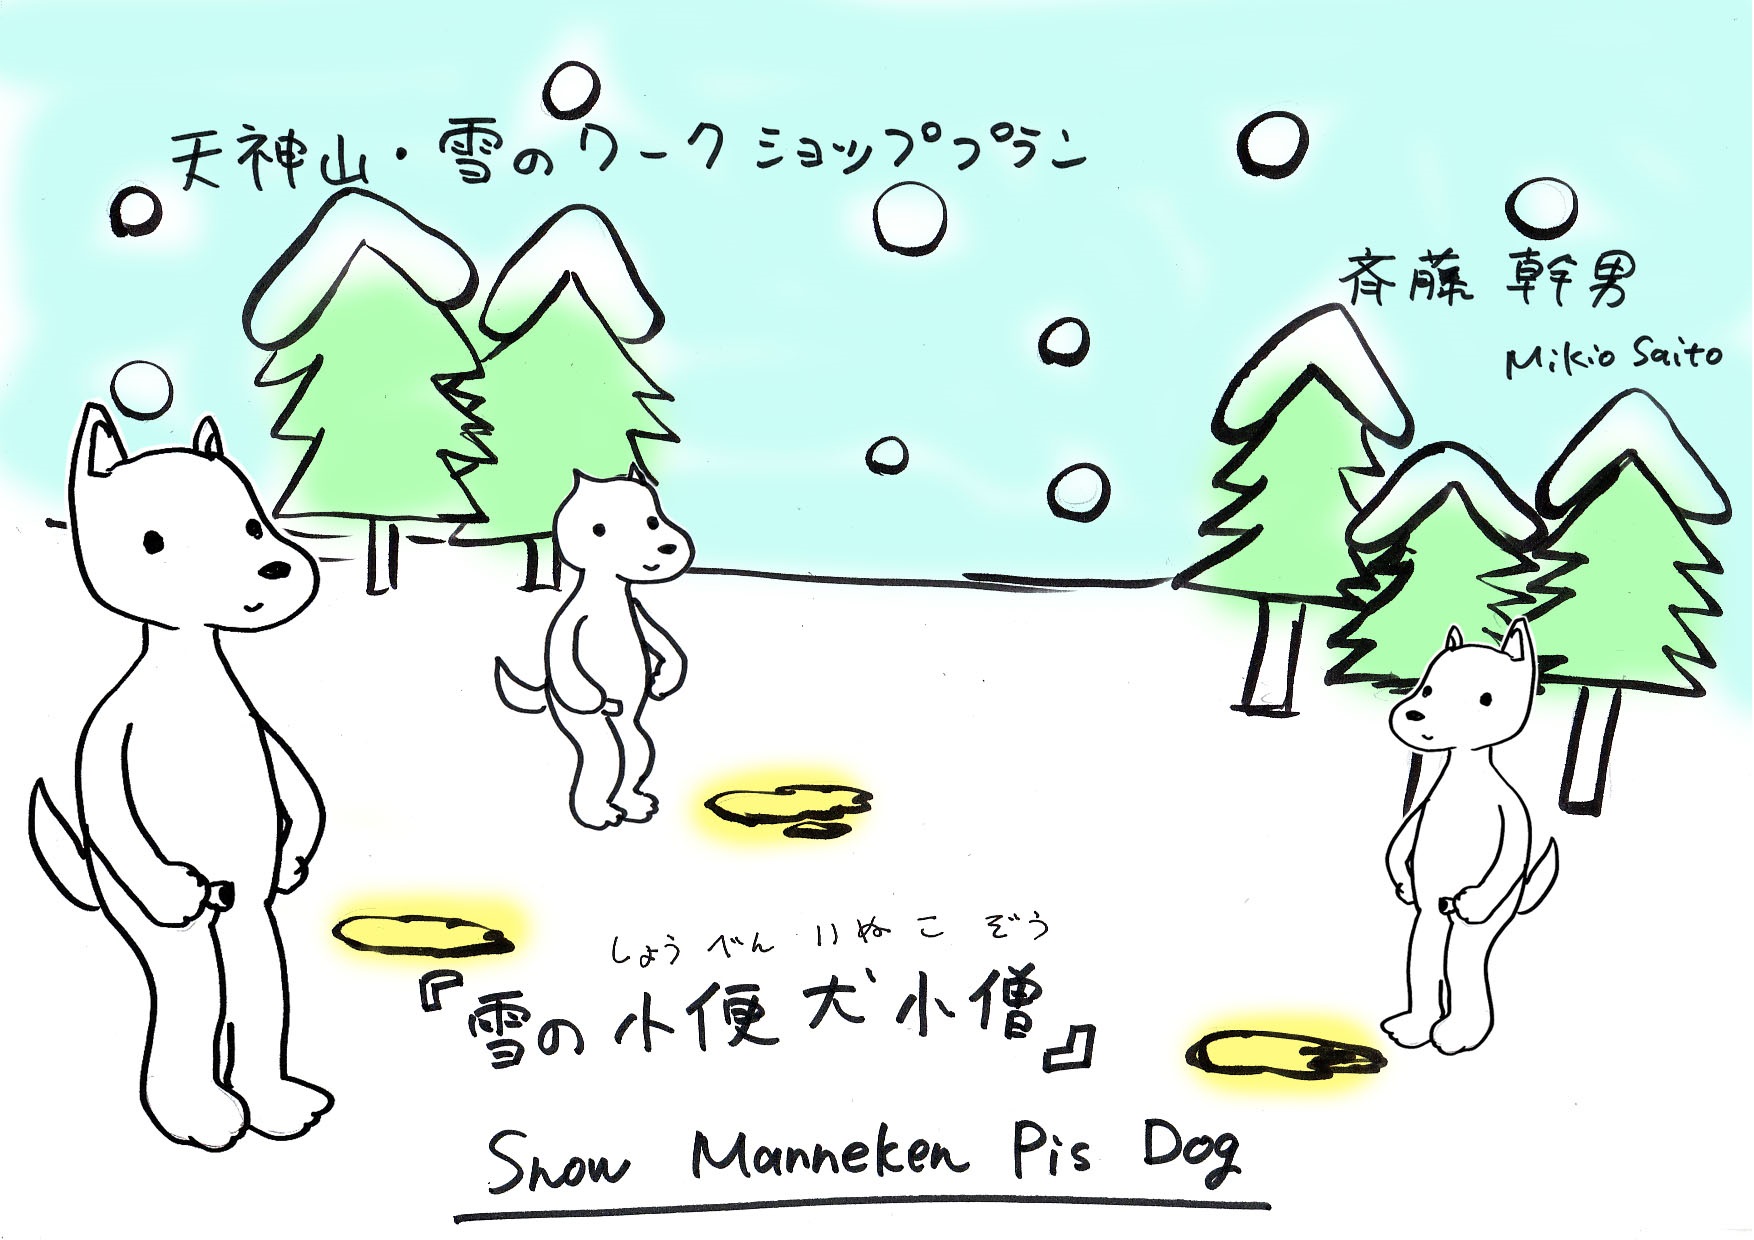 冬バカ 予告 ２月７日 犬の雪像づくり 雪の授業 Aisプランニング